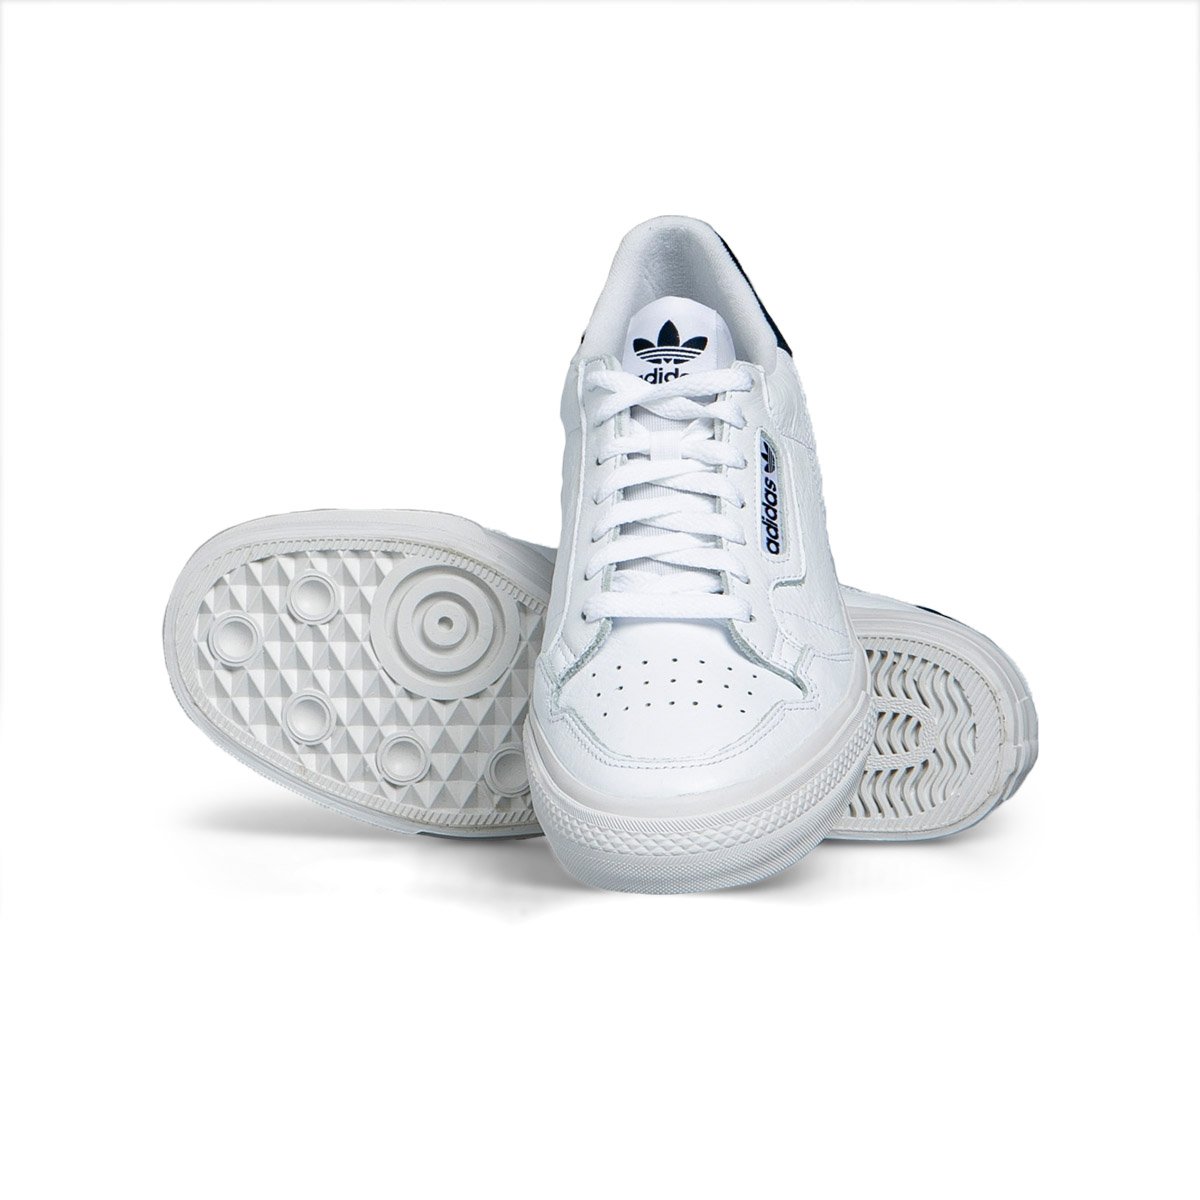 adidas originals baskets continental vulc eg4588 footwear white collegiate navy